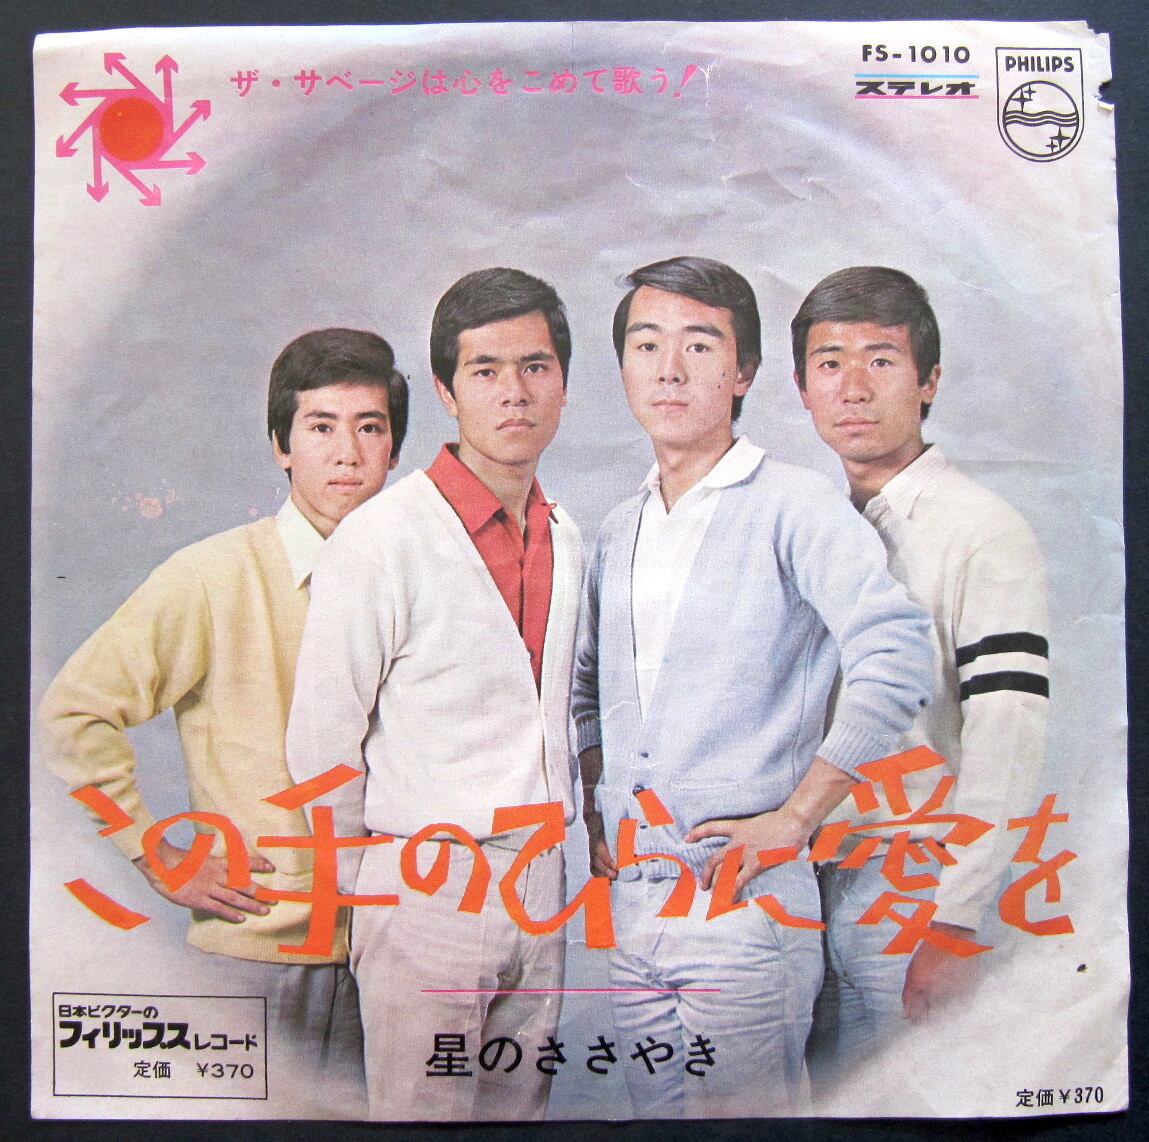 '66【EP】ザ・サベージ この手のひらに愛を *寺尾聰 音盤窟レコード